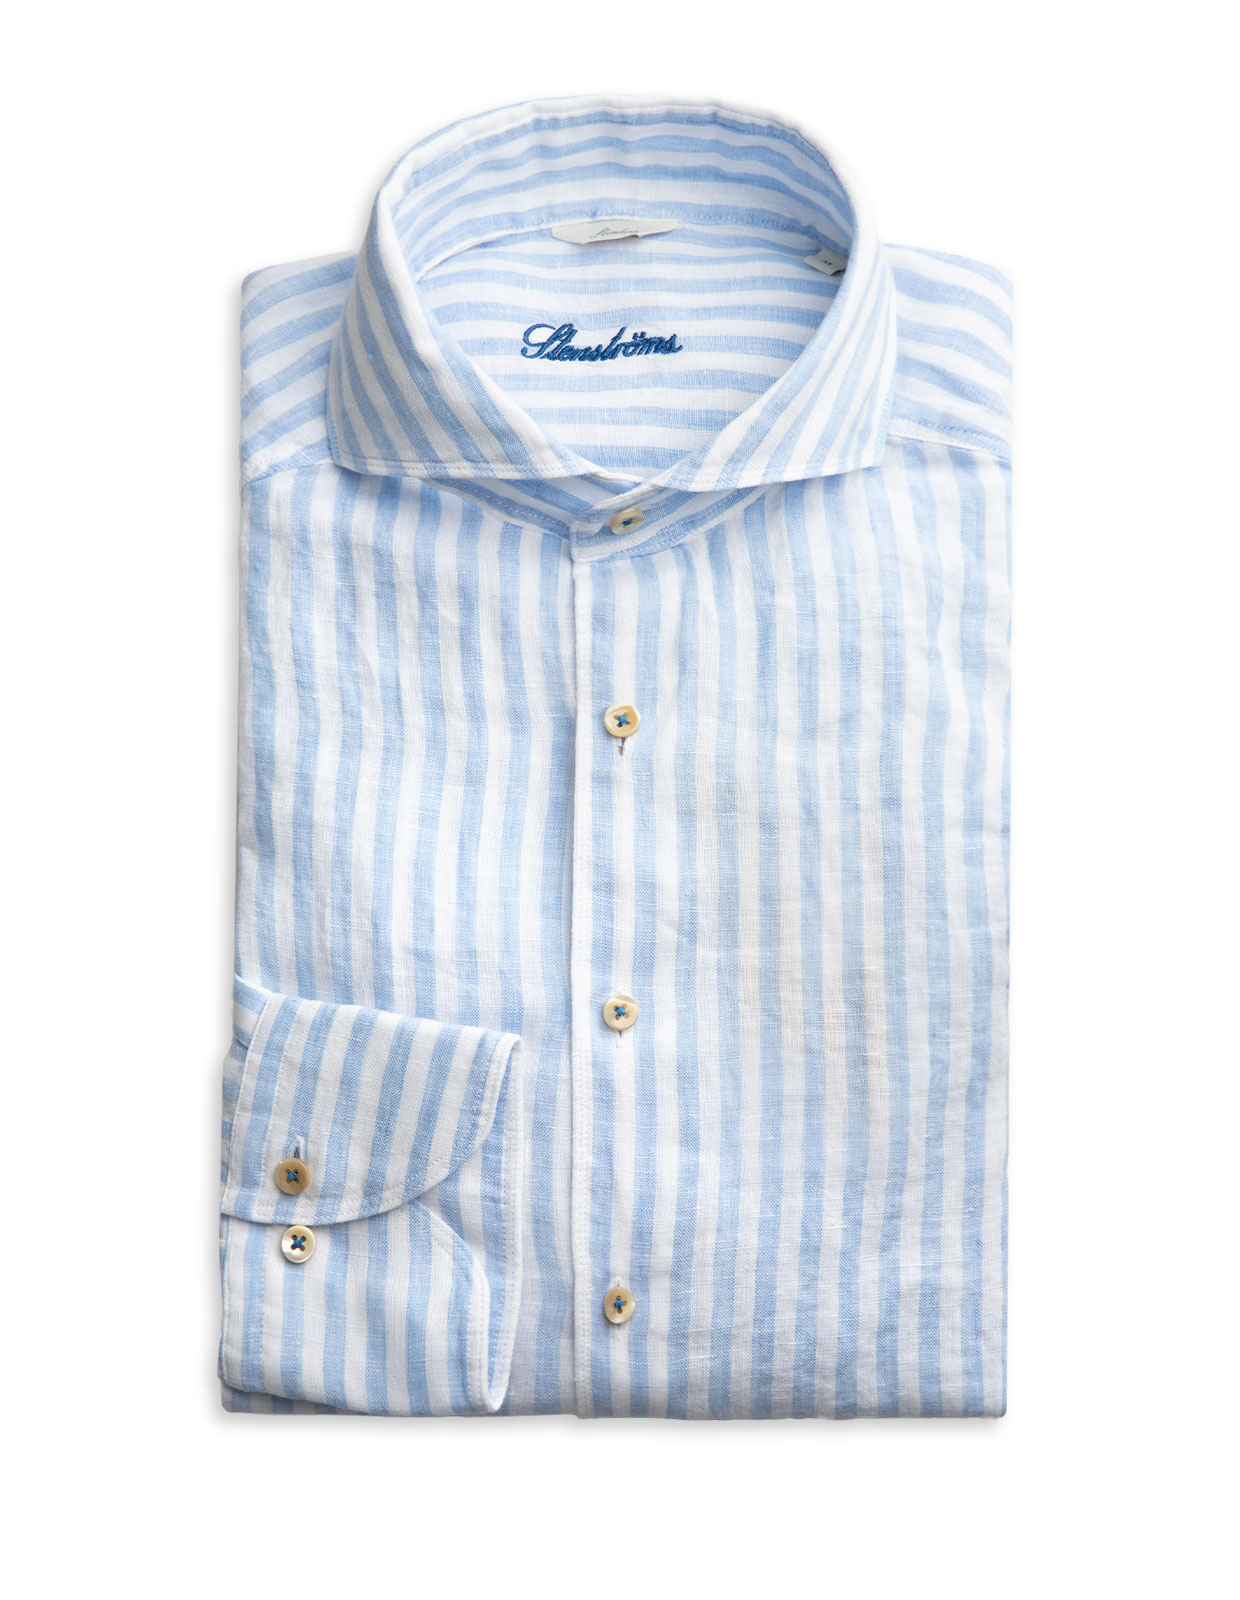 Slimline Shirt Striped Linen Light Blue/White